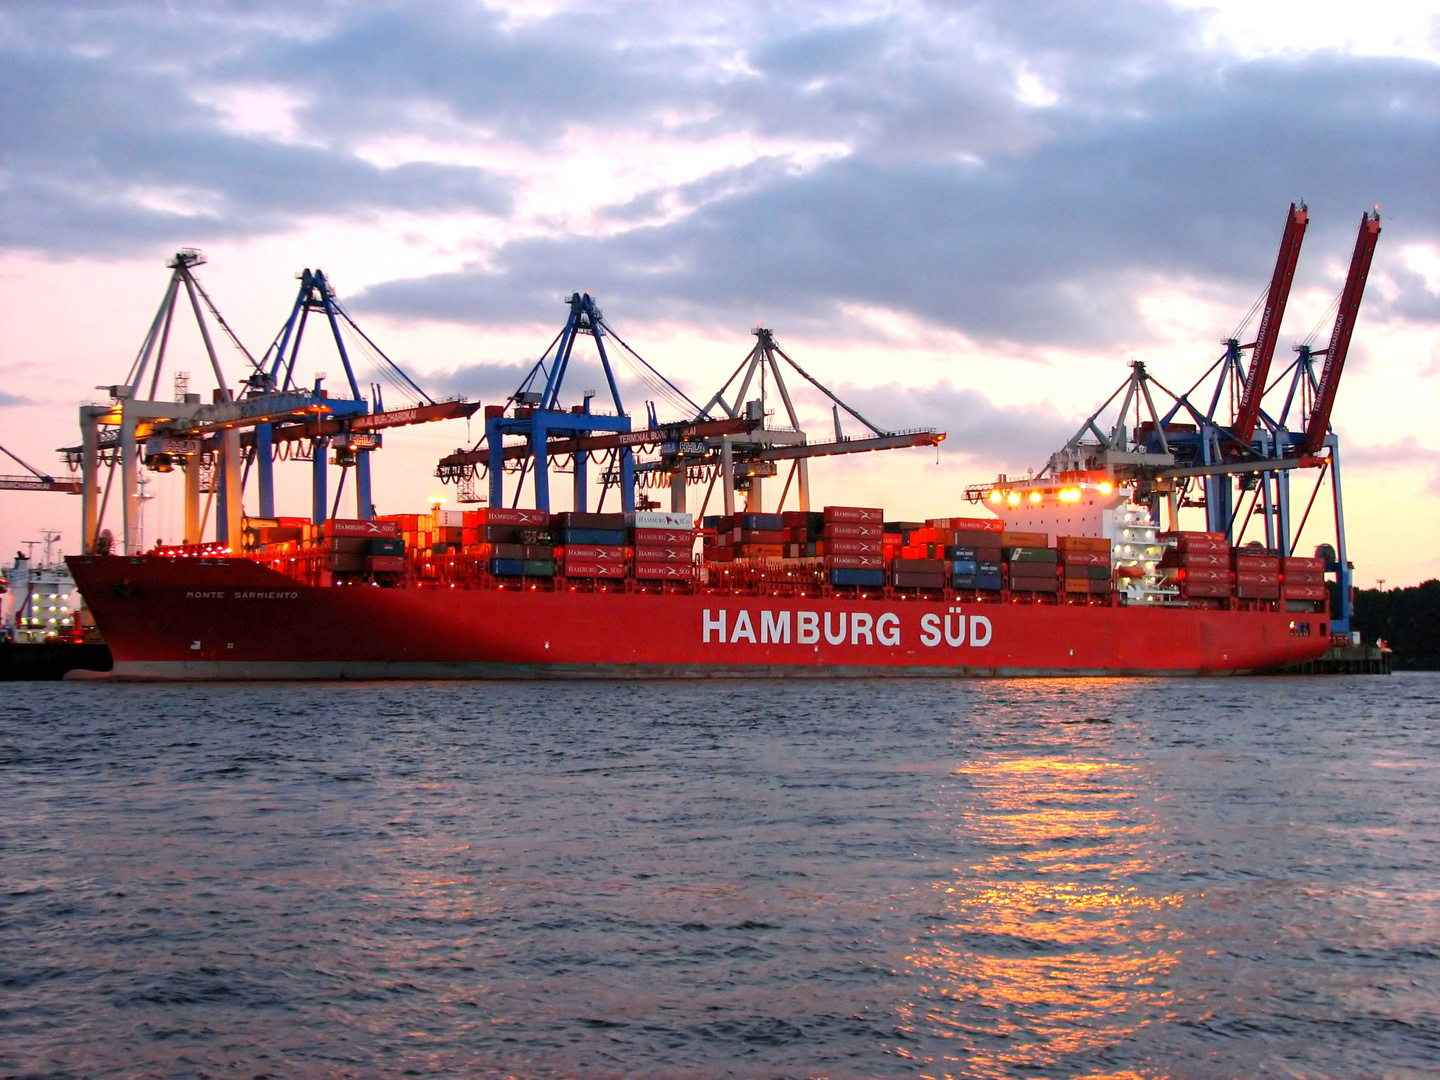 Abend im Hamburger Hafen